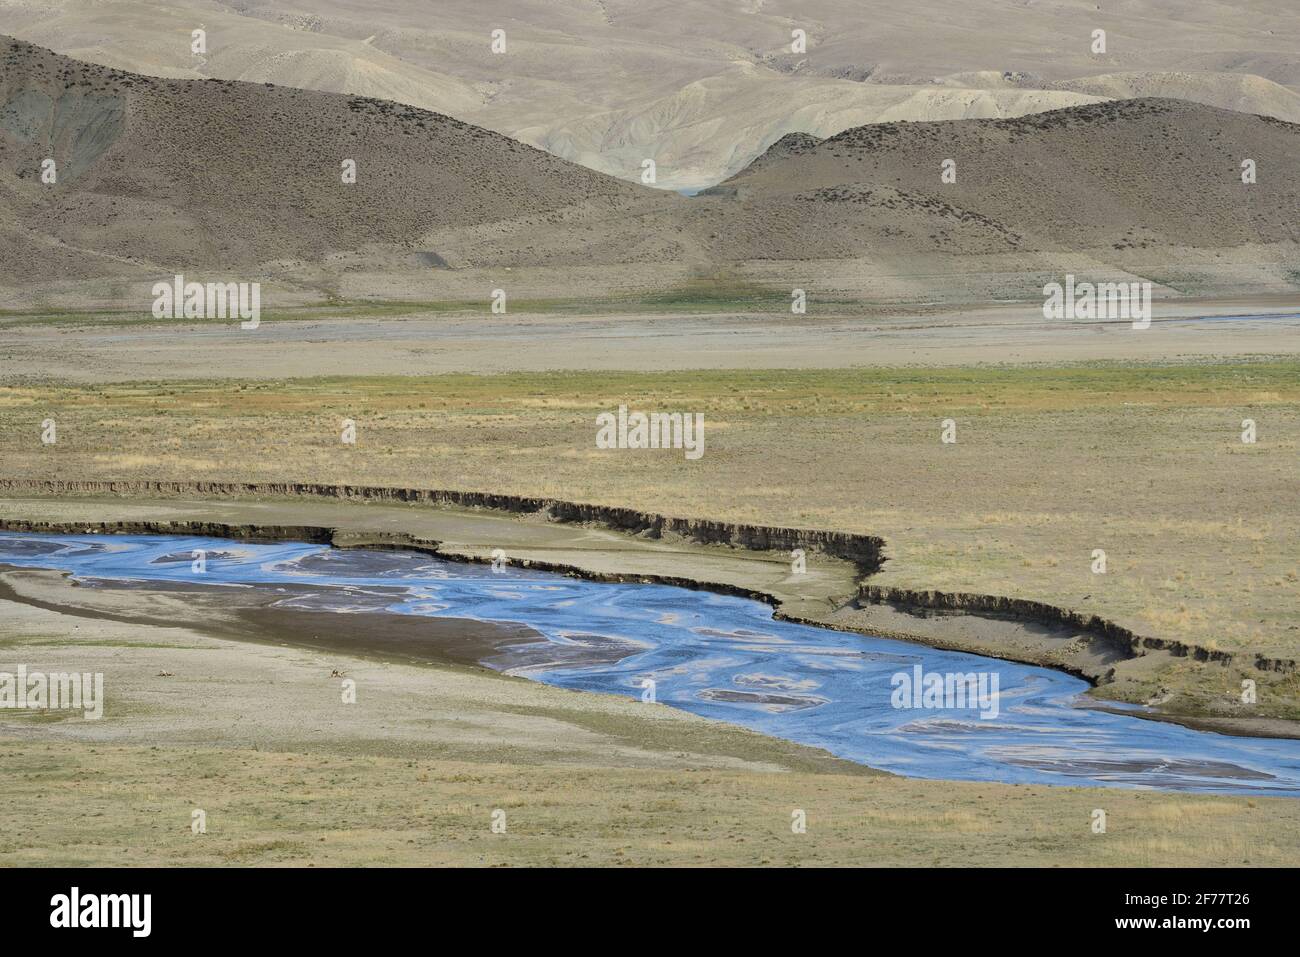 Iran, provincia dell'Azerbaigian occidentale, regione di Maku, fiume Zangmar Foto Stock